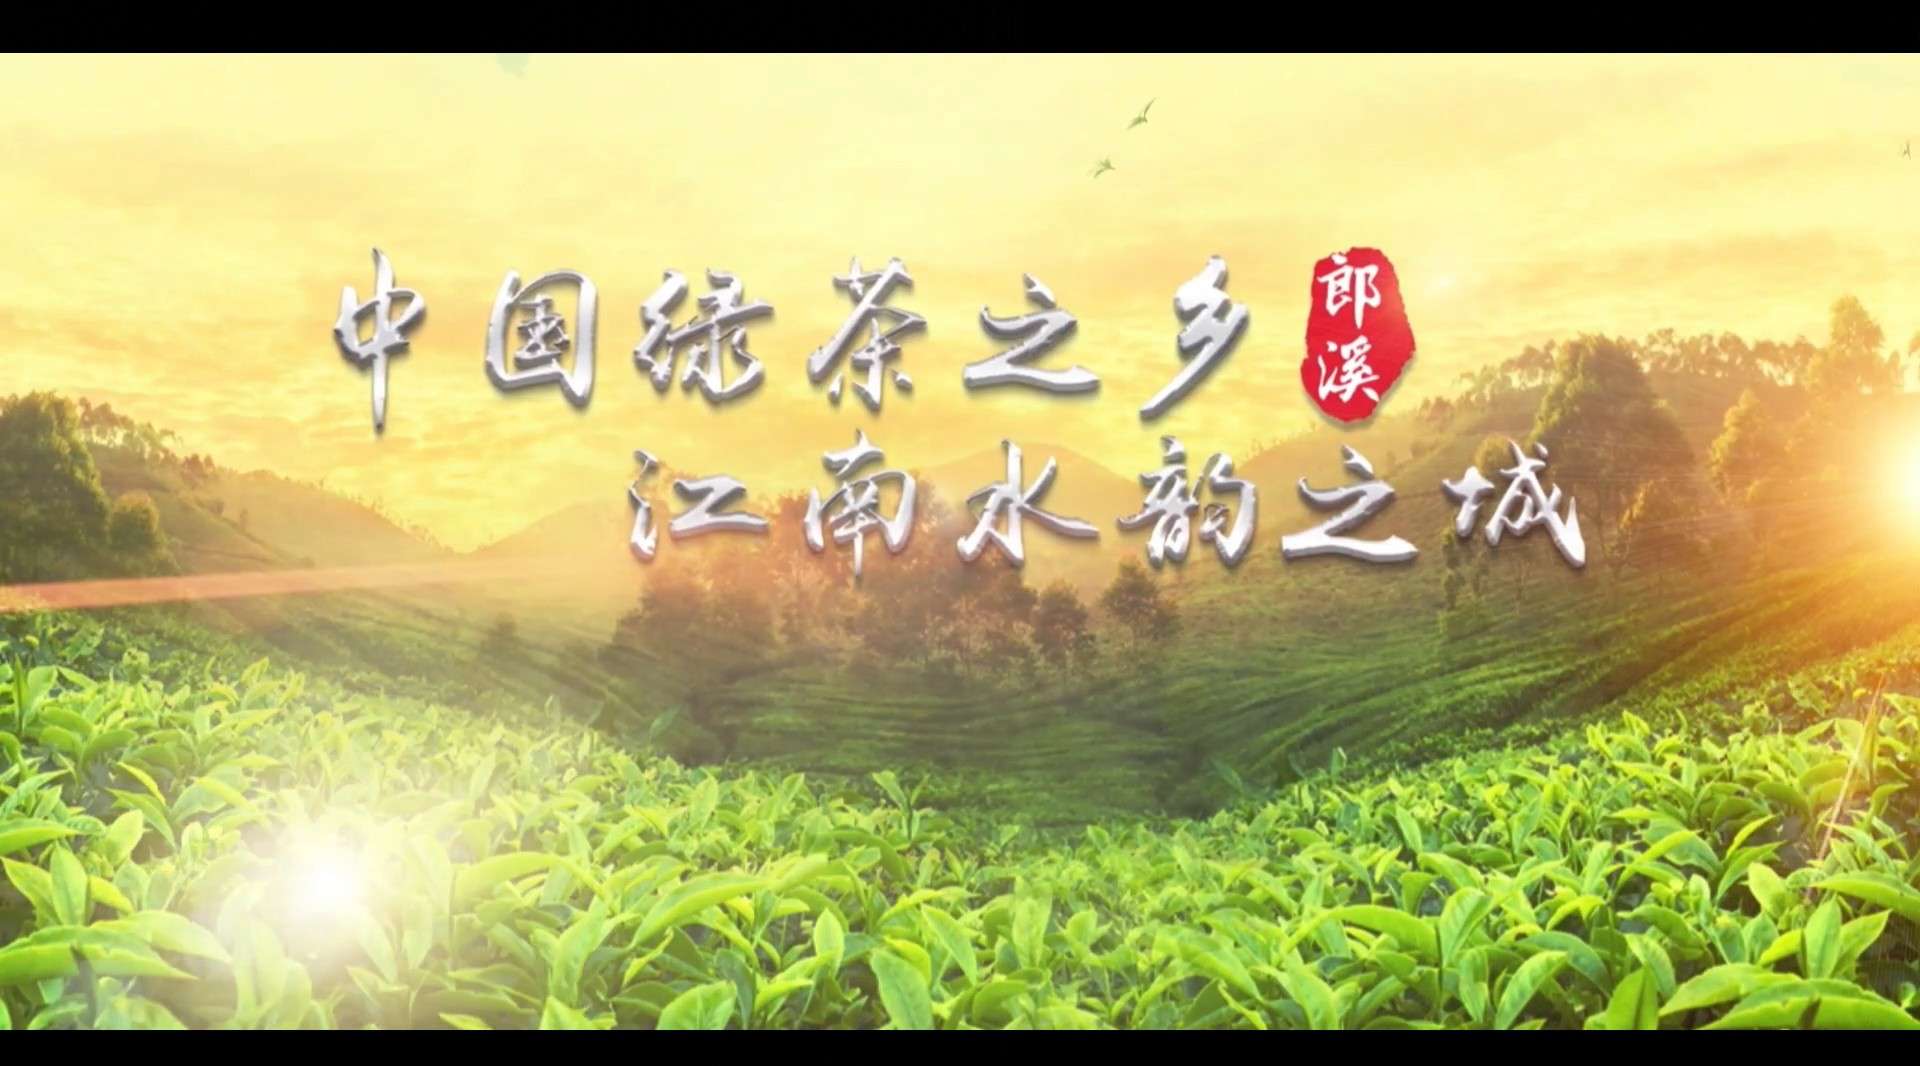 中国绿茶之乡郎溪【领导审核版4.30】